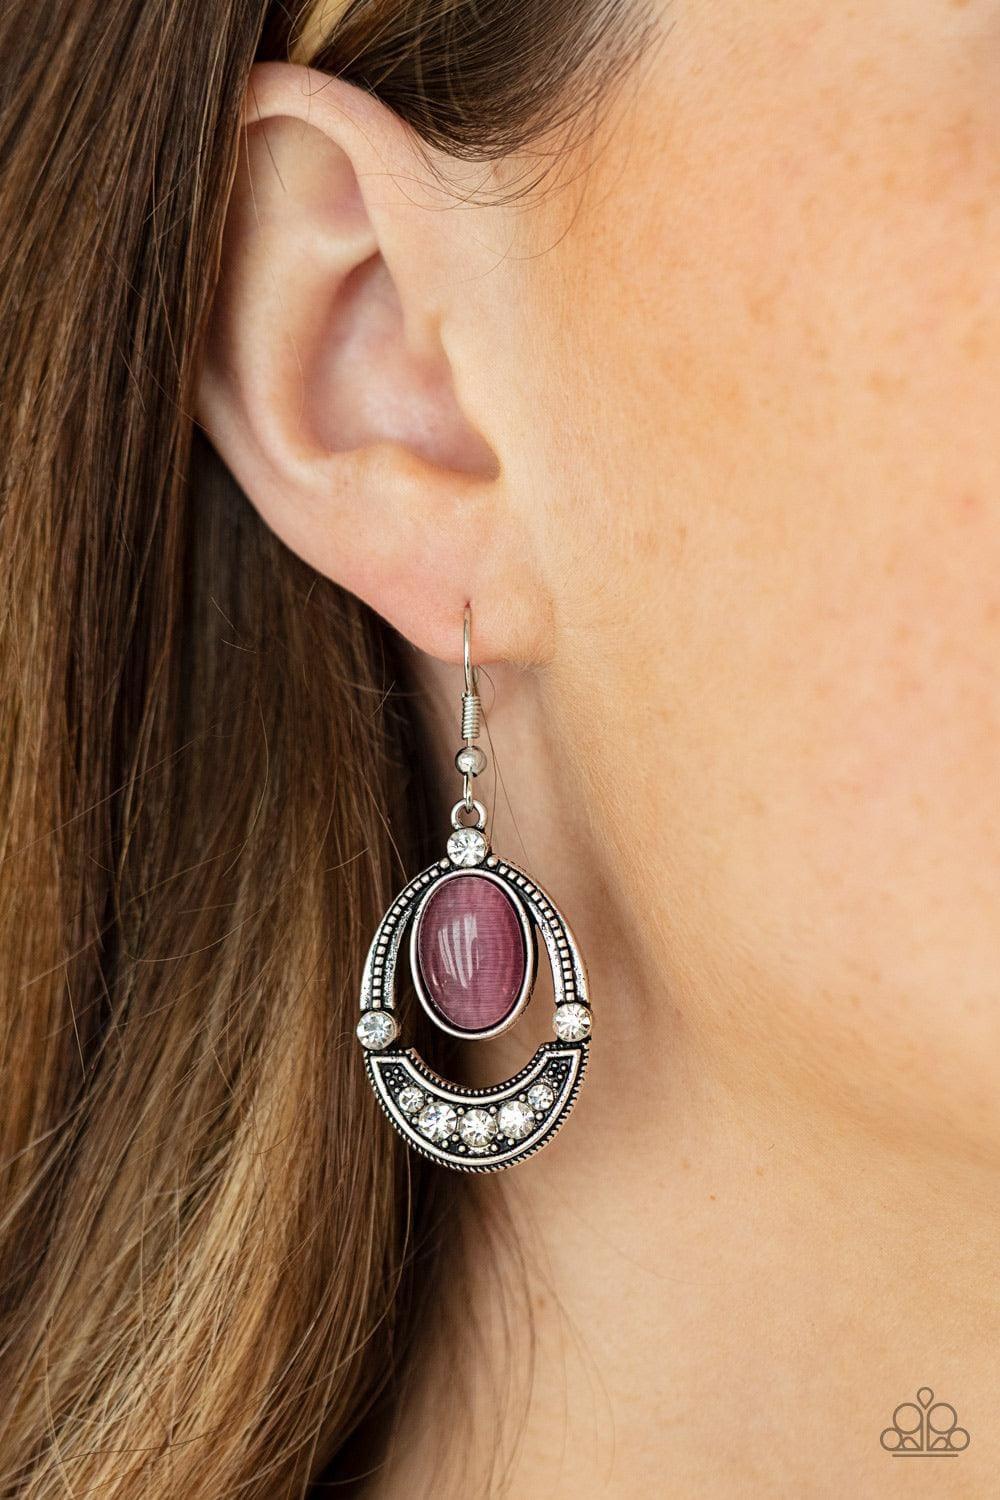 Paparazzi Accessories - Serene Shimmer - Purple Earrings - Bling by JessieK